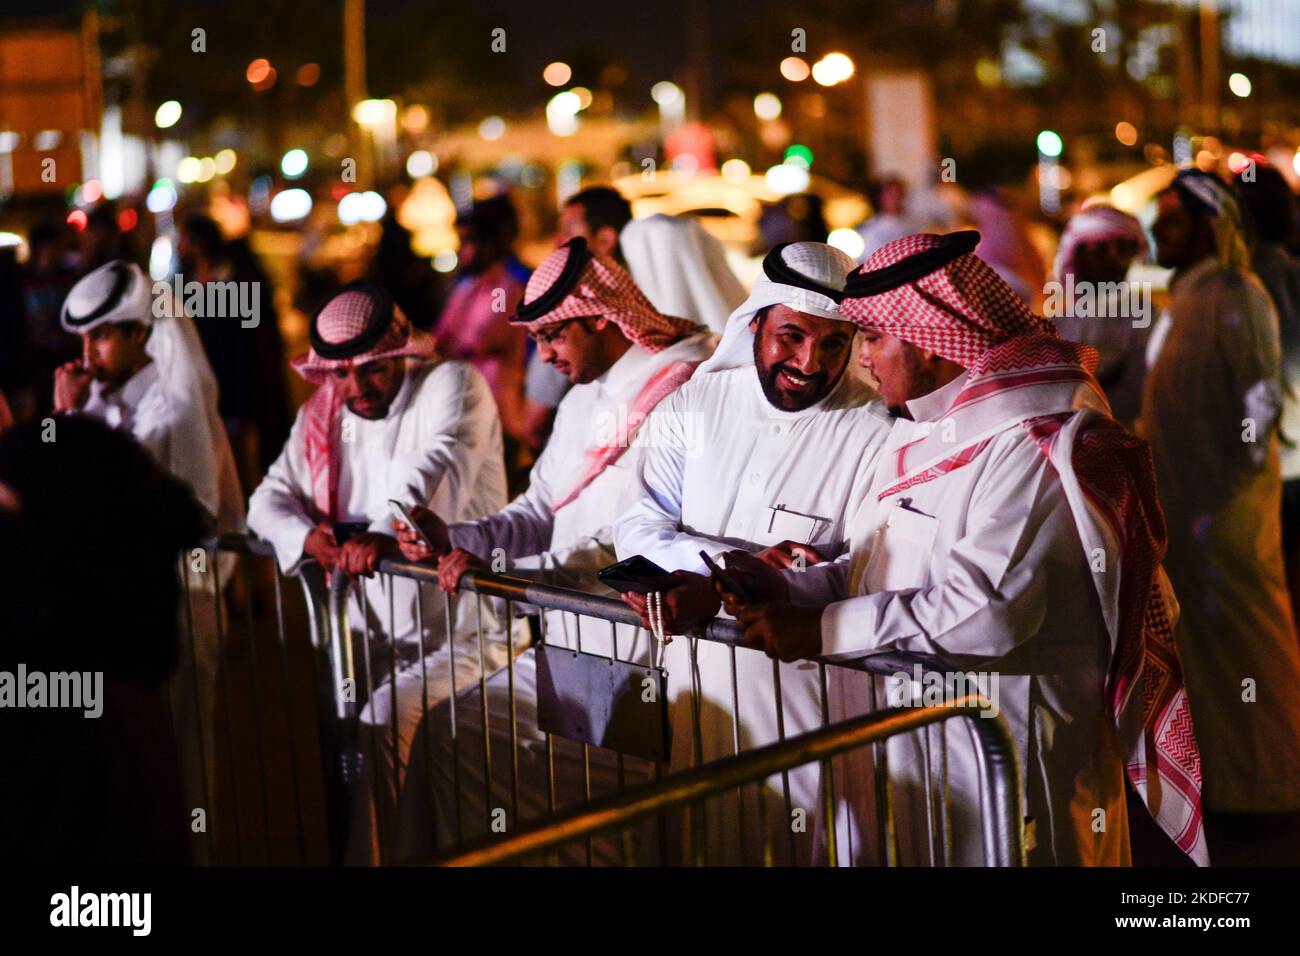 QATAR, Doha, Bazar Souq Waqif, qatari men at evening event / KATAR, Doha, Basar Souk Wakif, katarische Männer abends bei einer Veranstaltung, Männer tragen ein langes weißes Gewand, Thawb, und einen weißen Kopfschutz Ghitra, der mit Igal, einem schwarzen Band, festgehalten wird Stock Photo